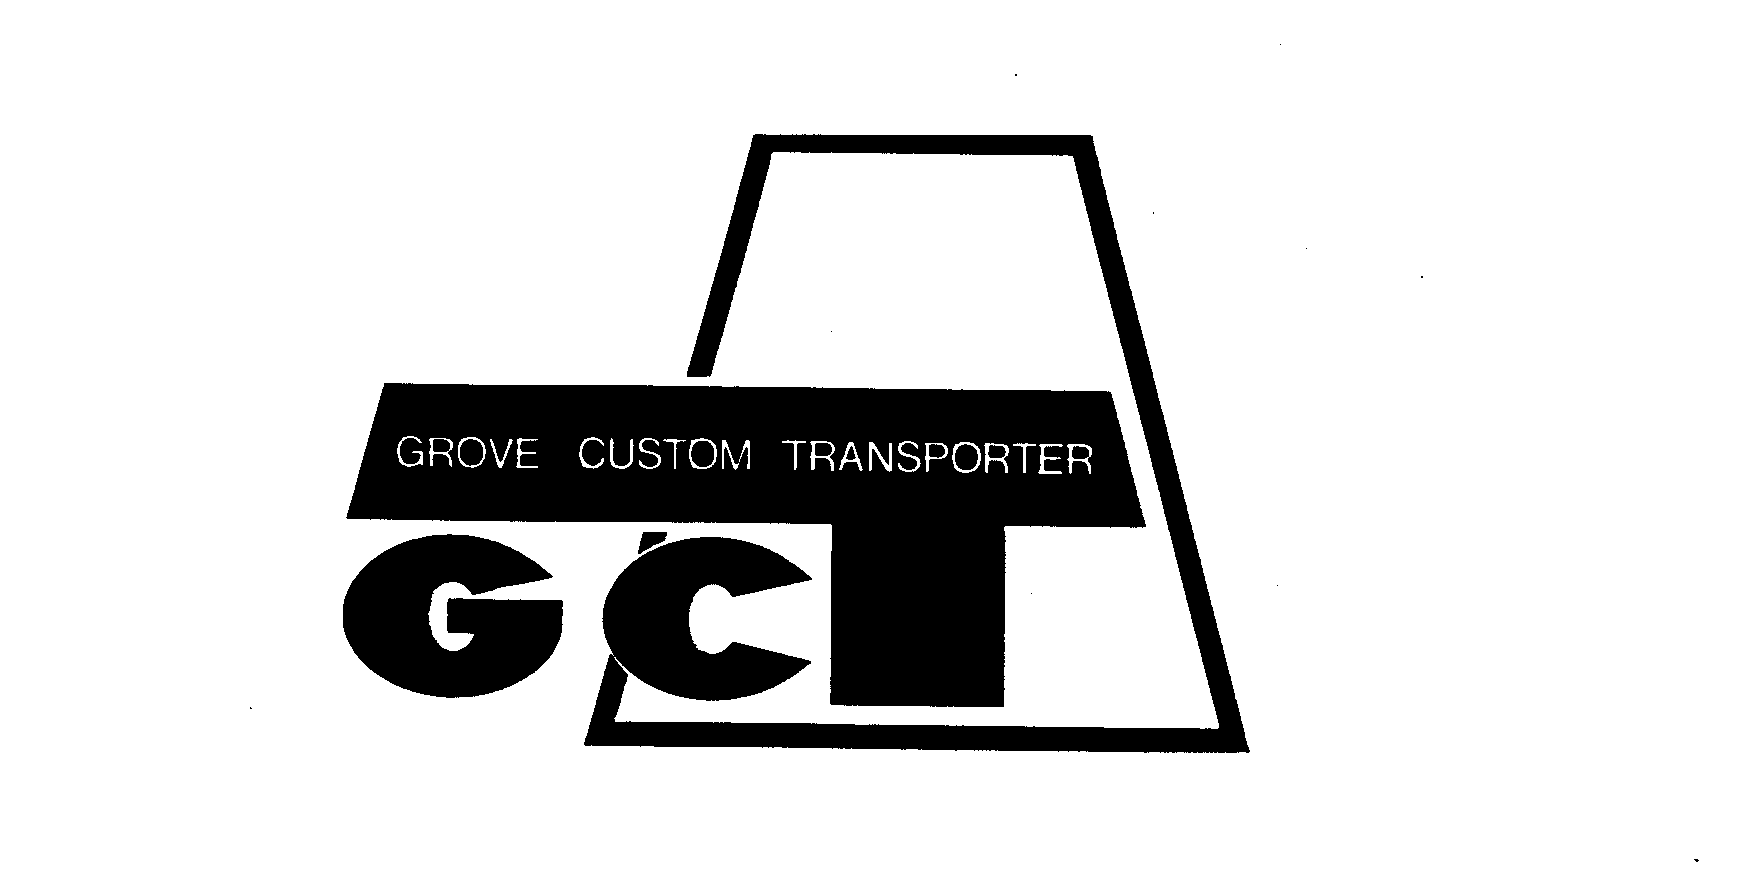  GCT GROVE CUSTOM TRANSPORTER